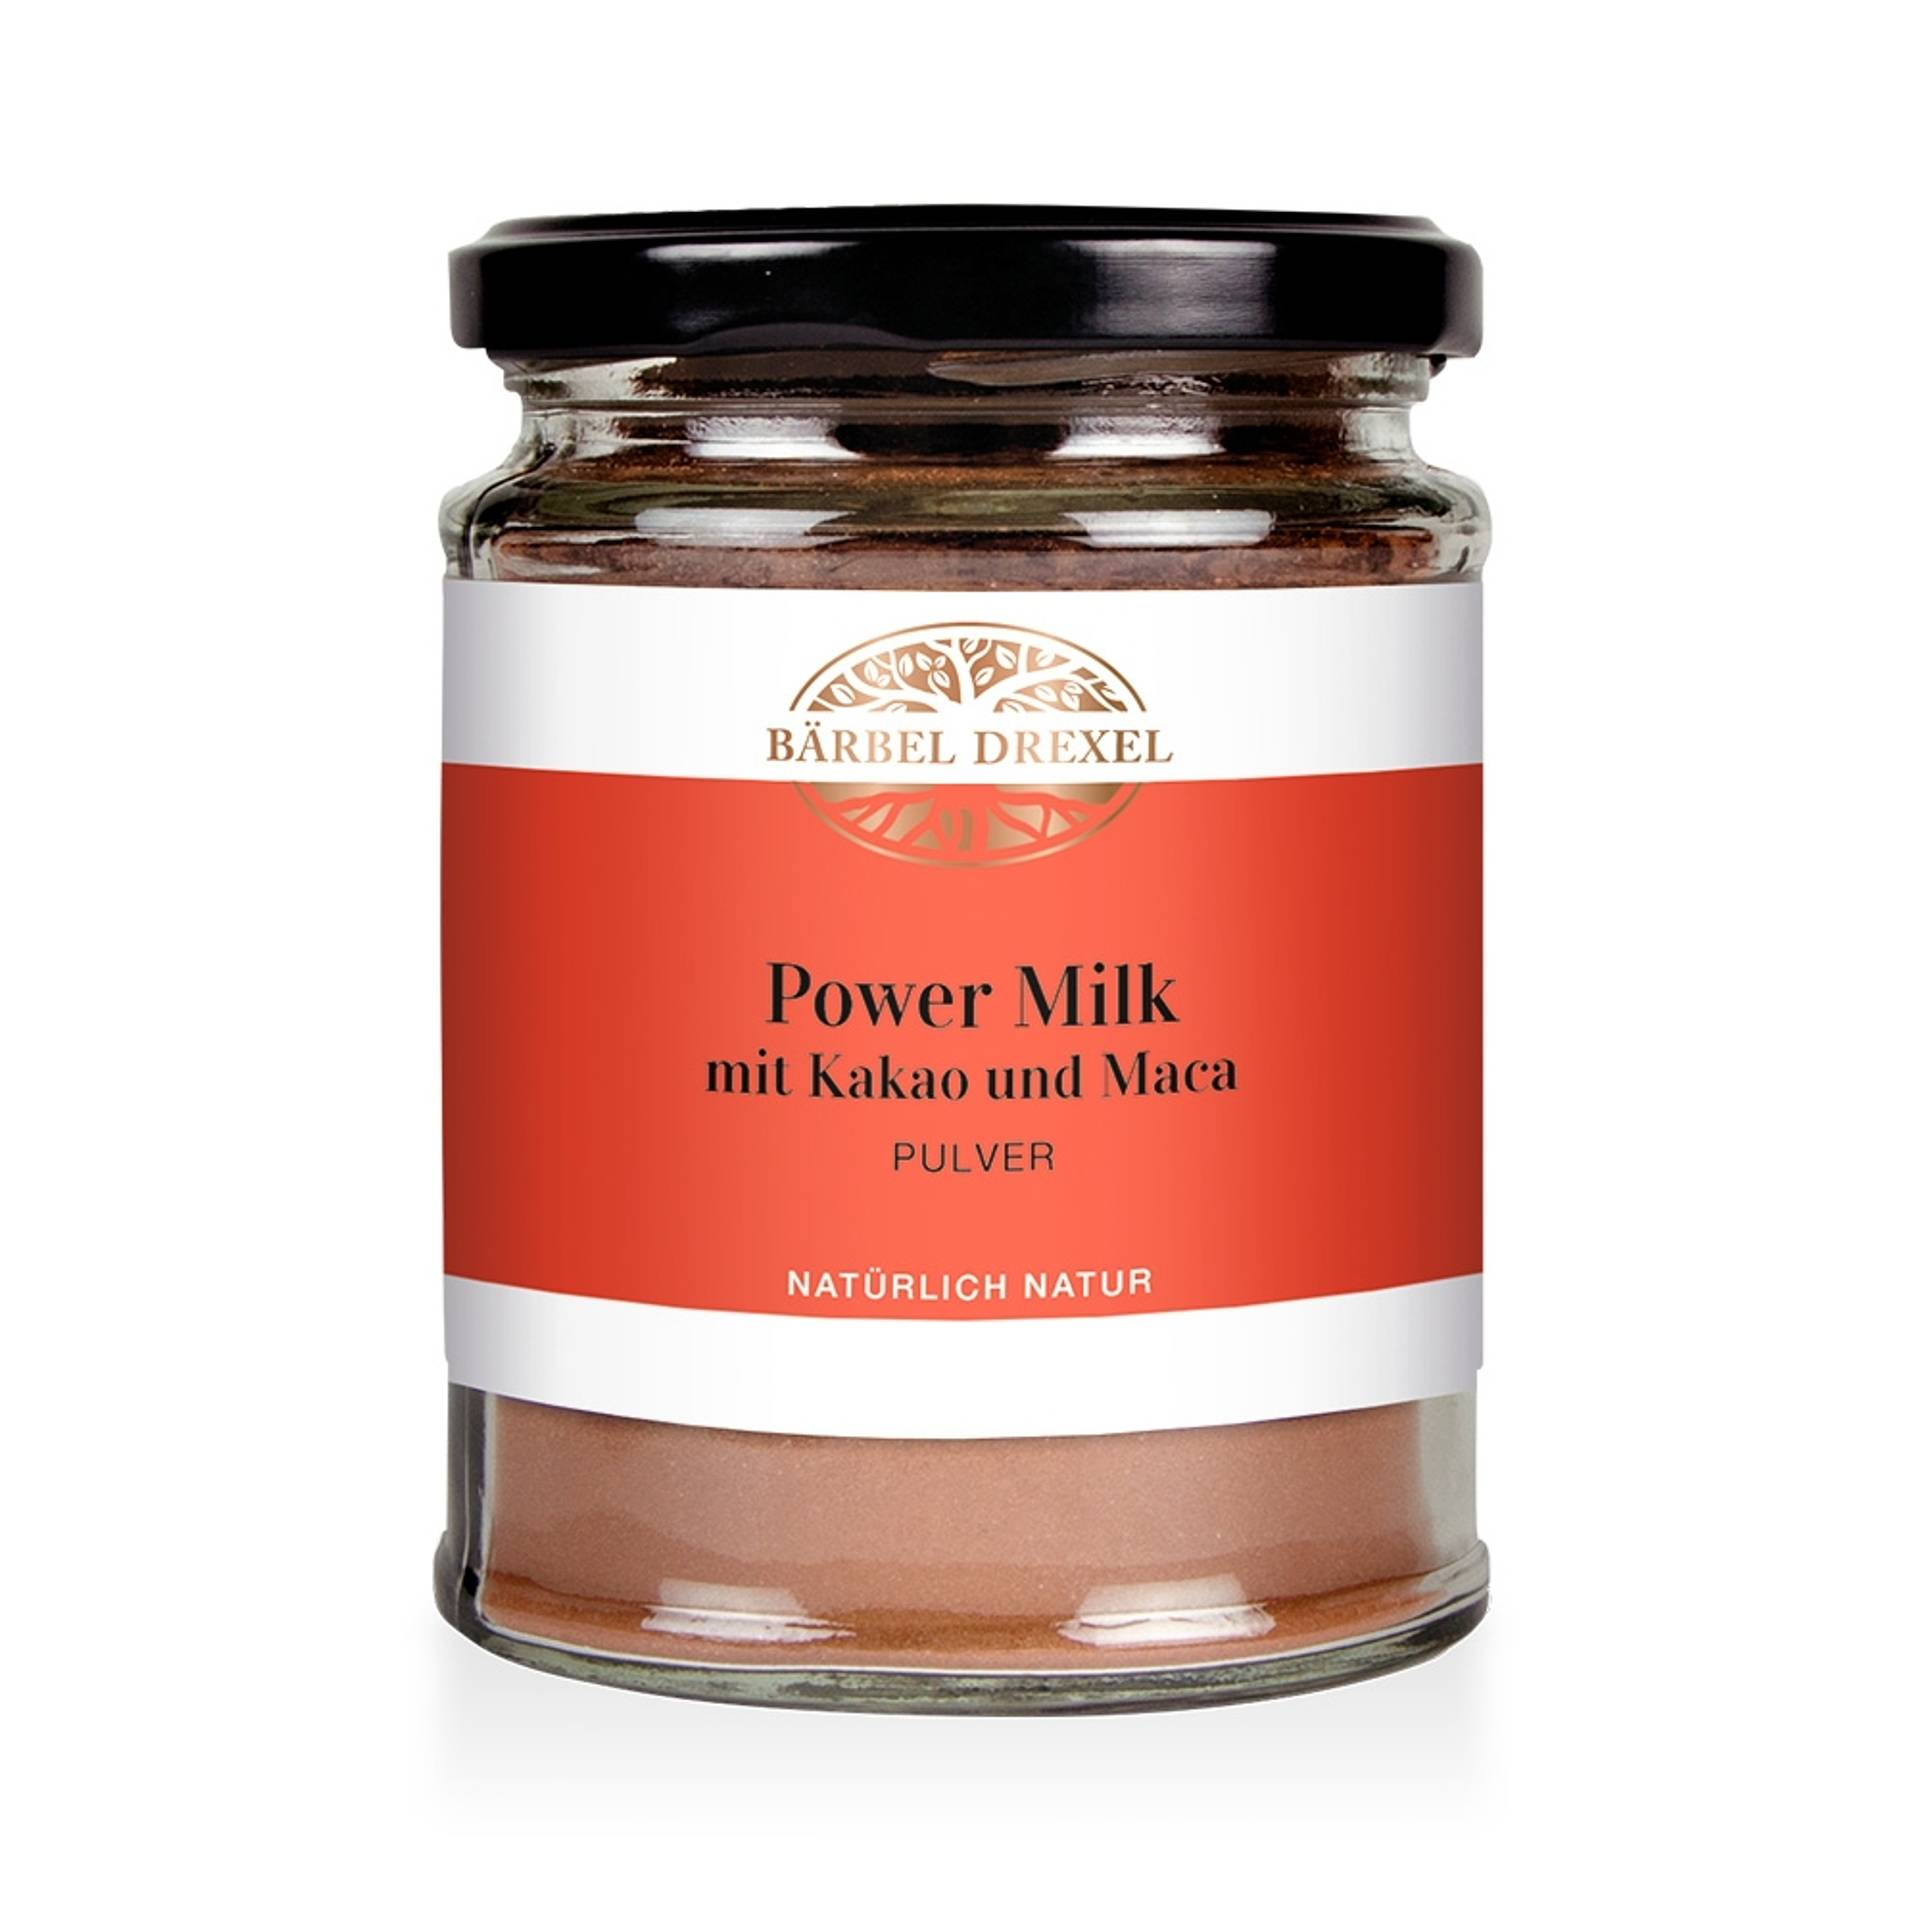 77007-power-milk-mit-kakao-und-maca-pulver_ohne-deko_1.jpg